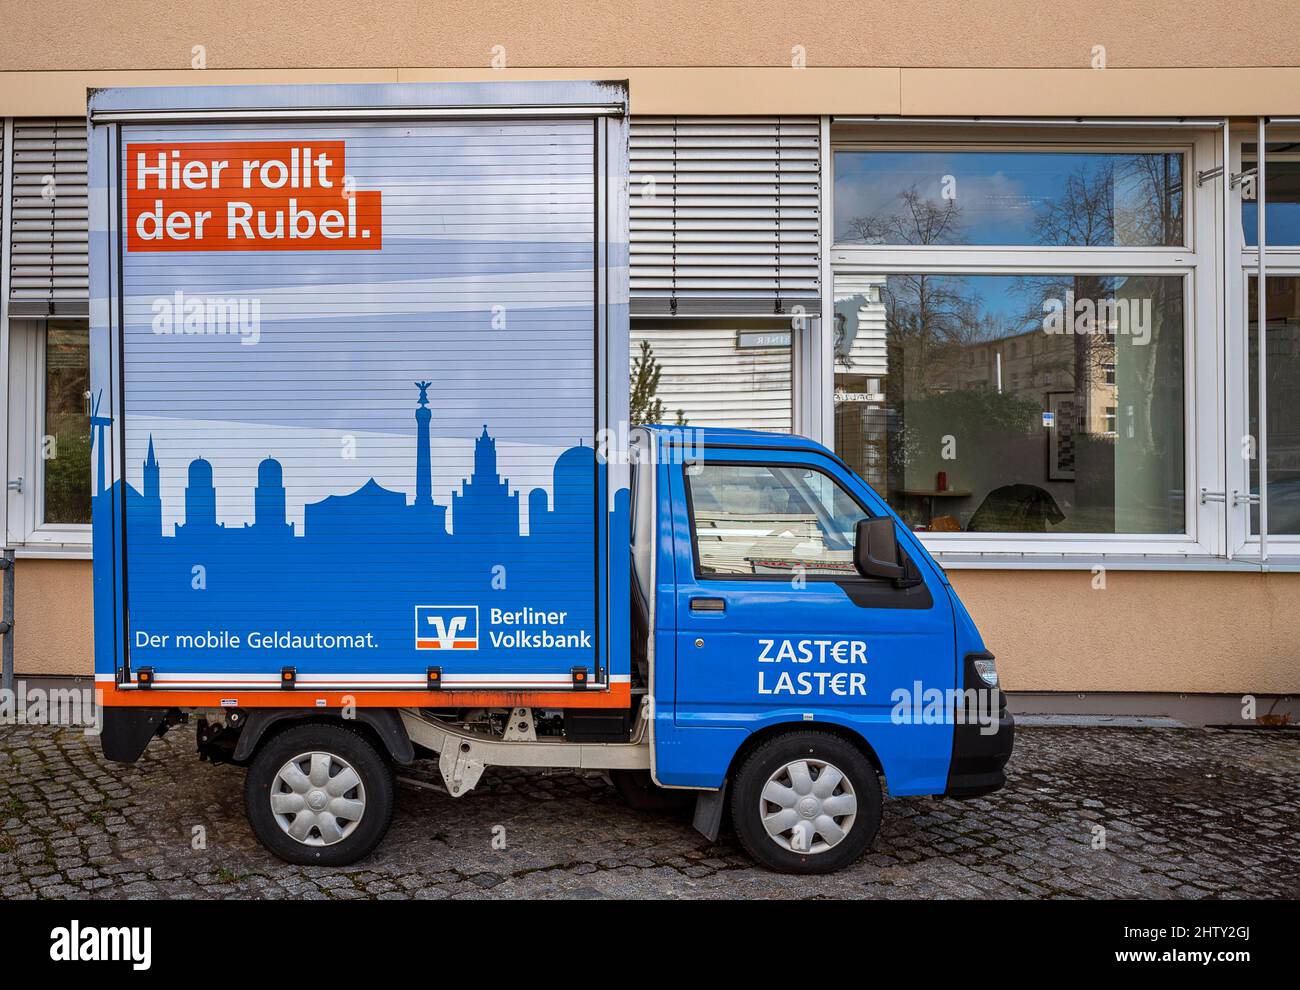 Mobiler Geldautomat der Berliner Volksbank, Berlin, Deutschland Stockfoto